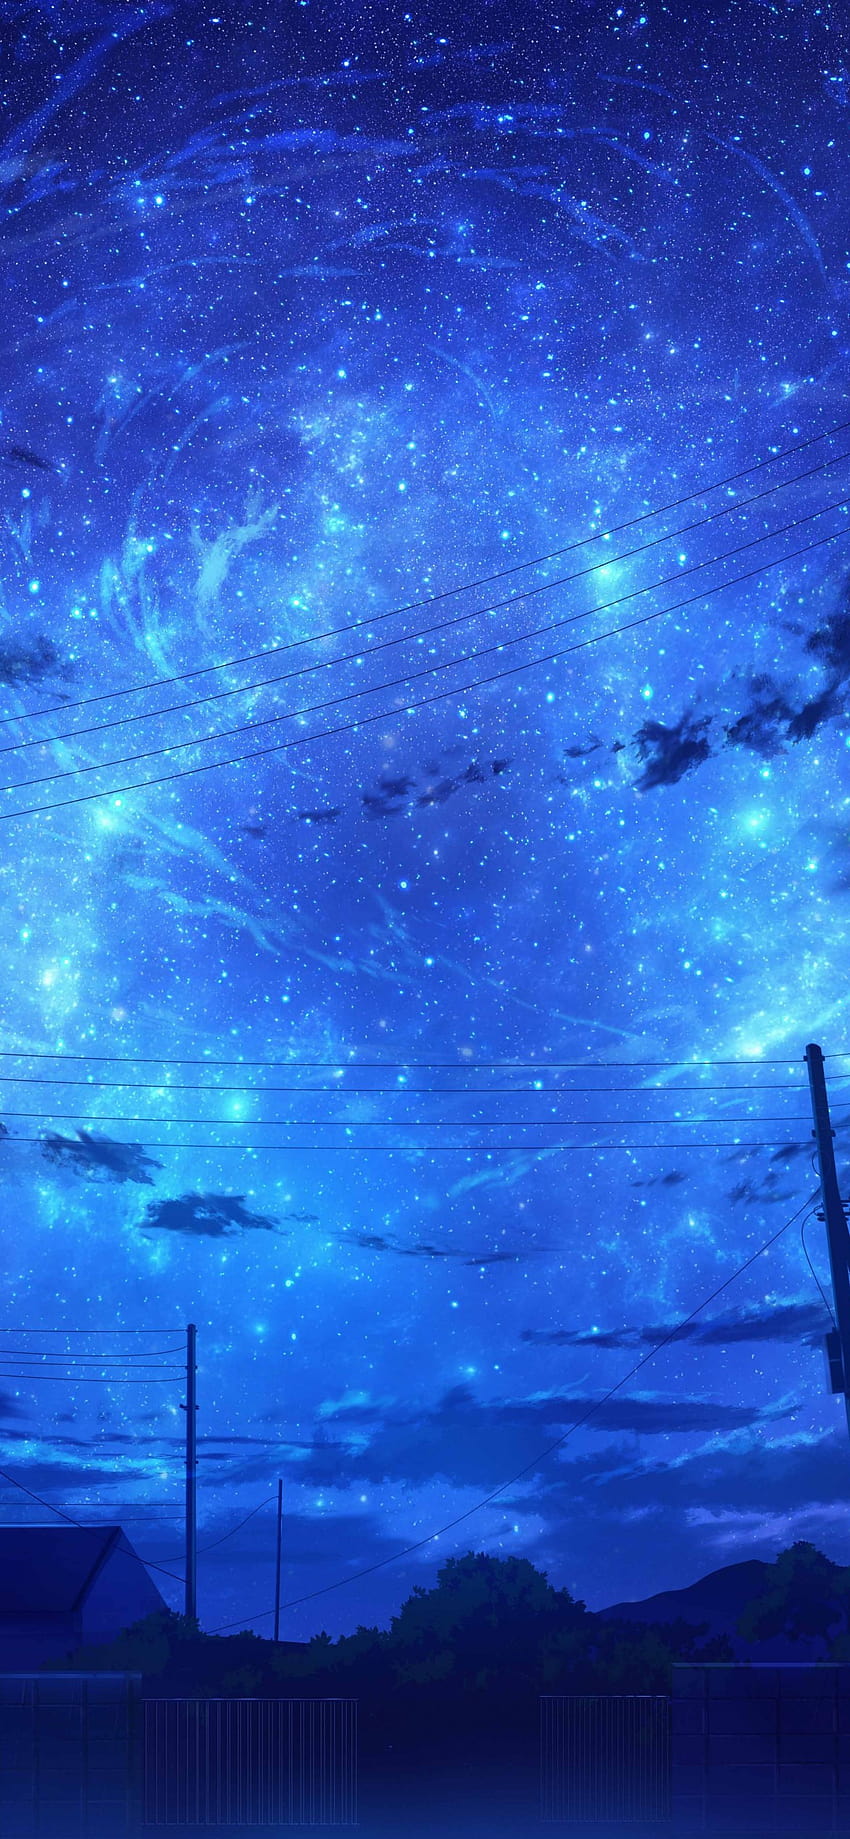 1170x2532 Anime Kraj, Błękitne niebo, Chmury, Sceneria, Gwiaździsta noc dla iPhone 12 Pro, nocna estetyczna sceneria anime Tapeta na telefon HD